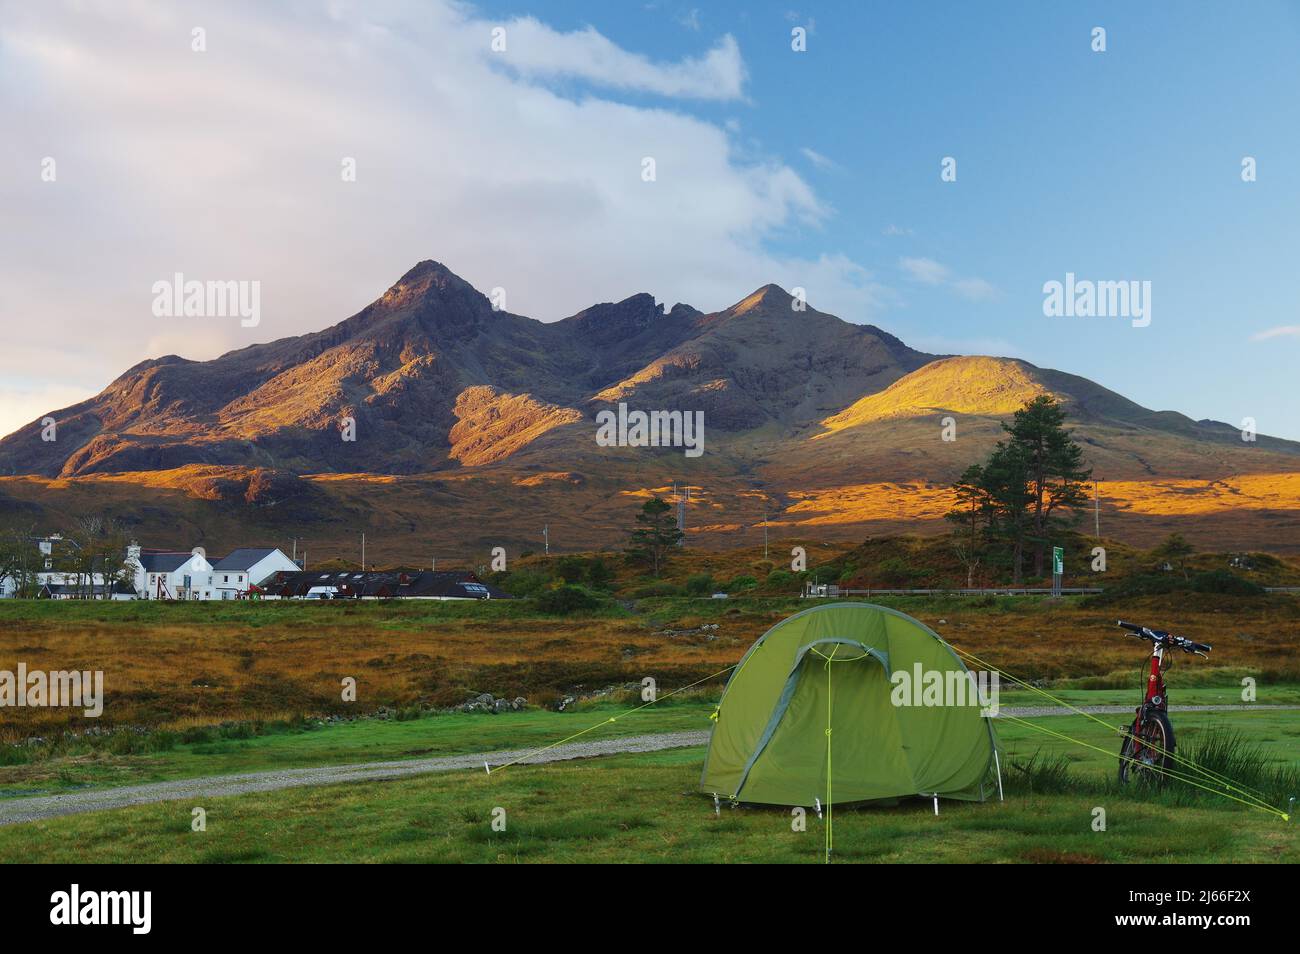 Zelt und Fahrrad vor rauhe Berglandschaft, sligachan, isola di skye, cullins, Hebriden, Schottland, grossbritannnien Foto Stock